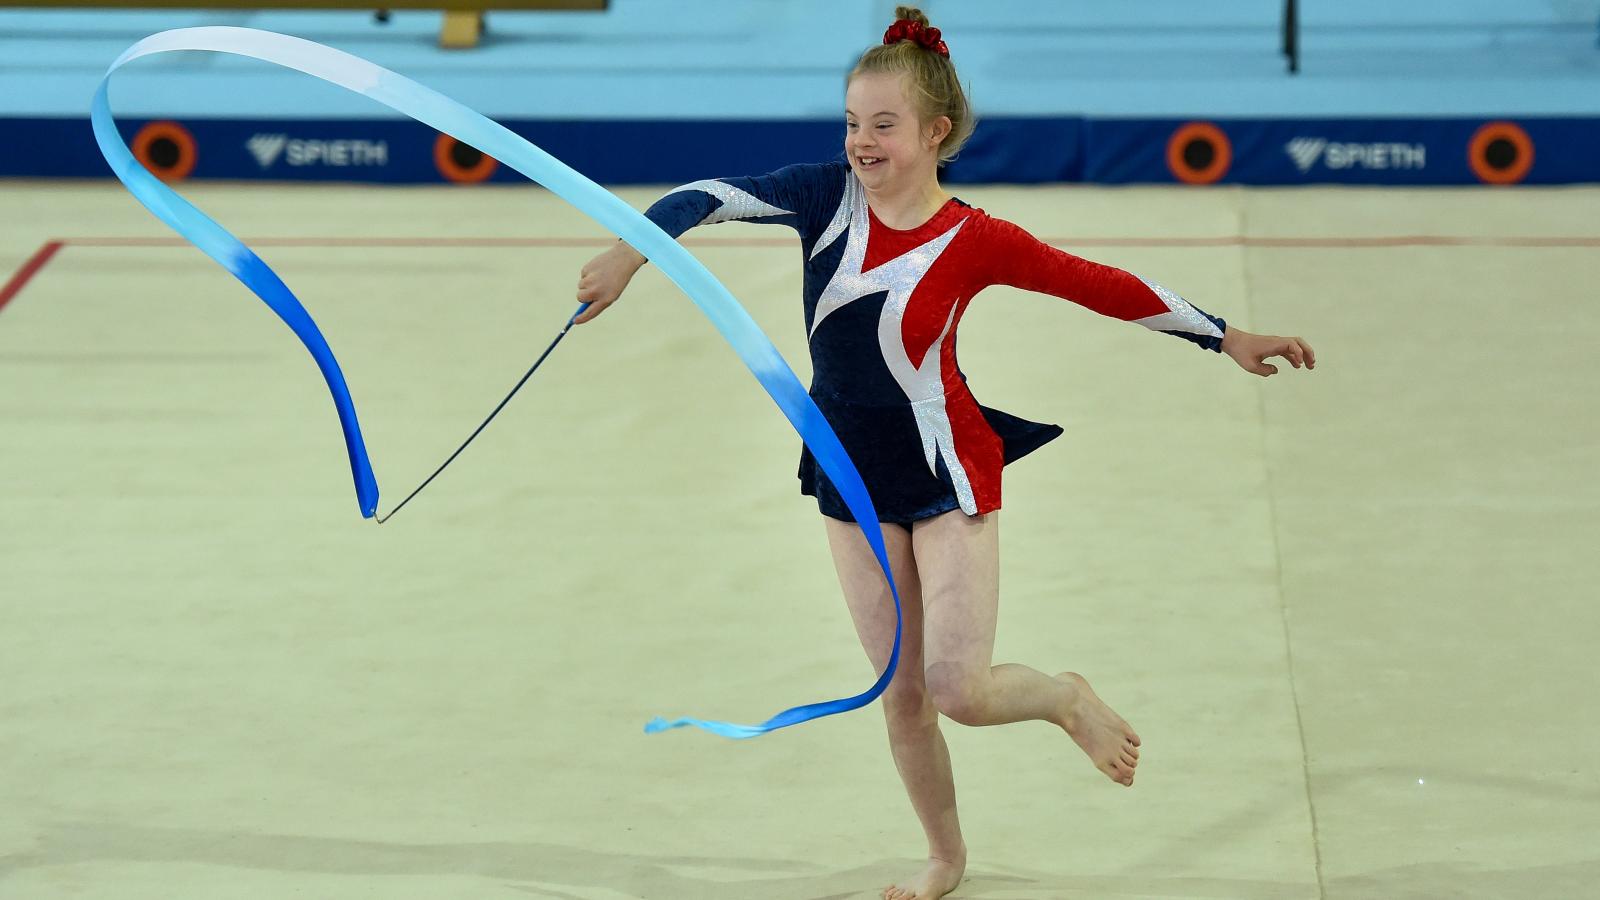 Special Olympics gymastic performing rhythmic gymnastics with ribbon